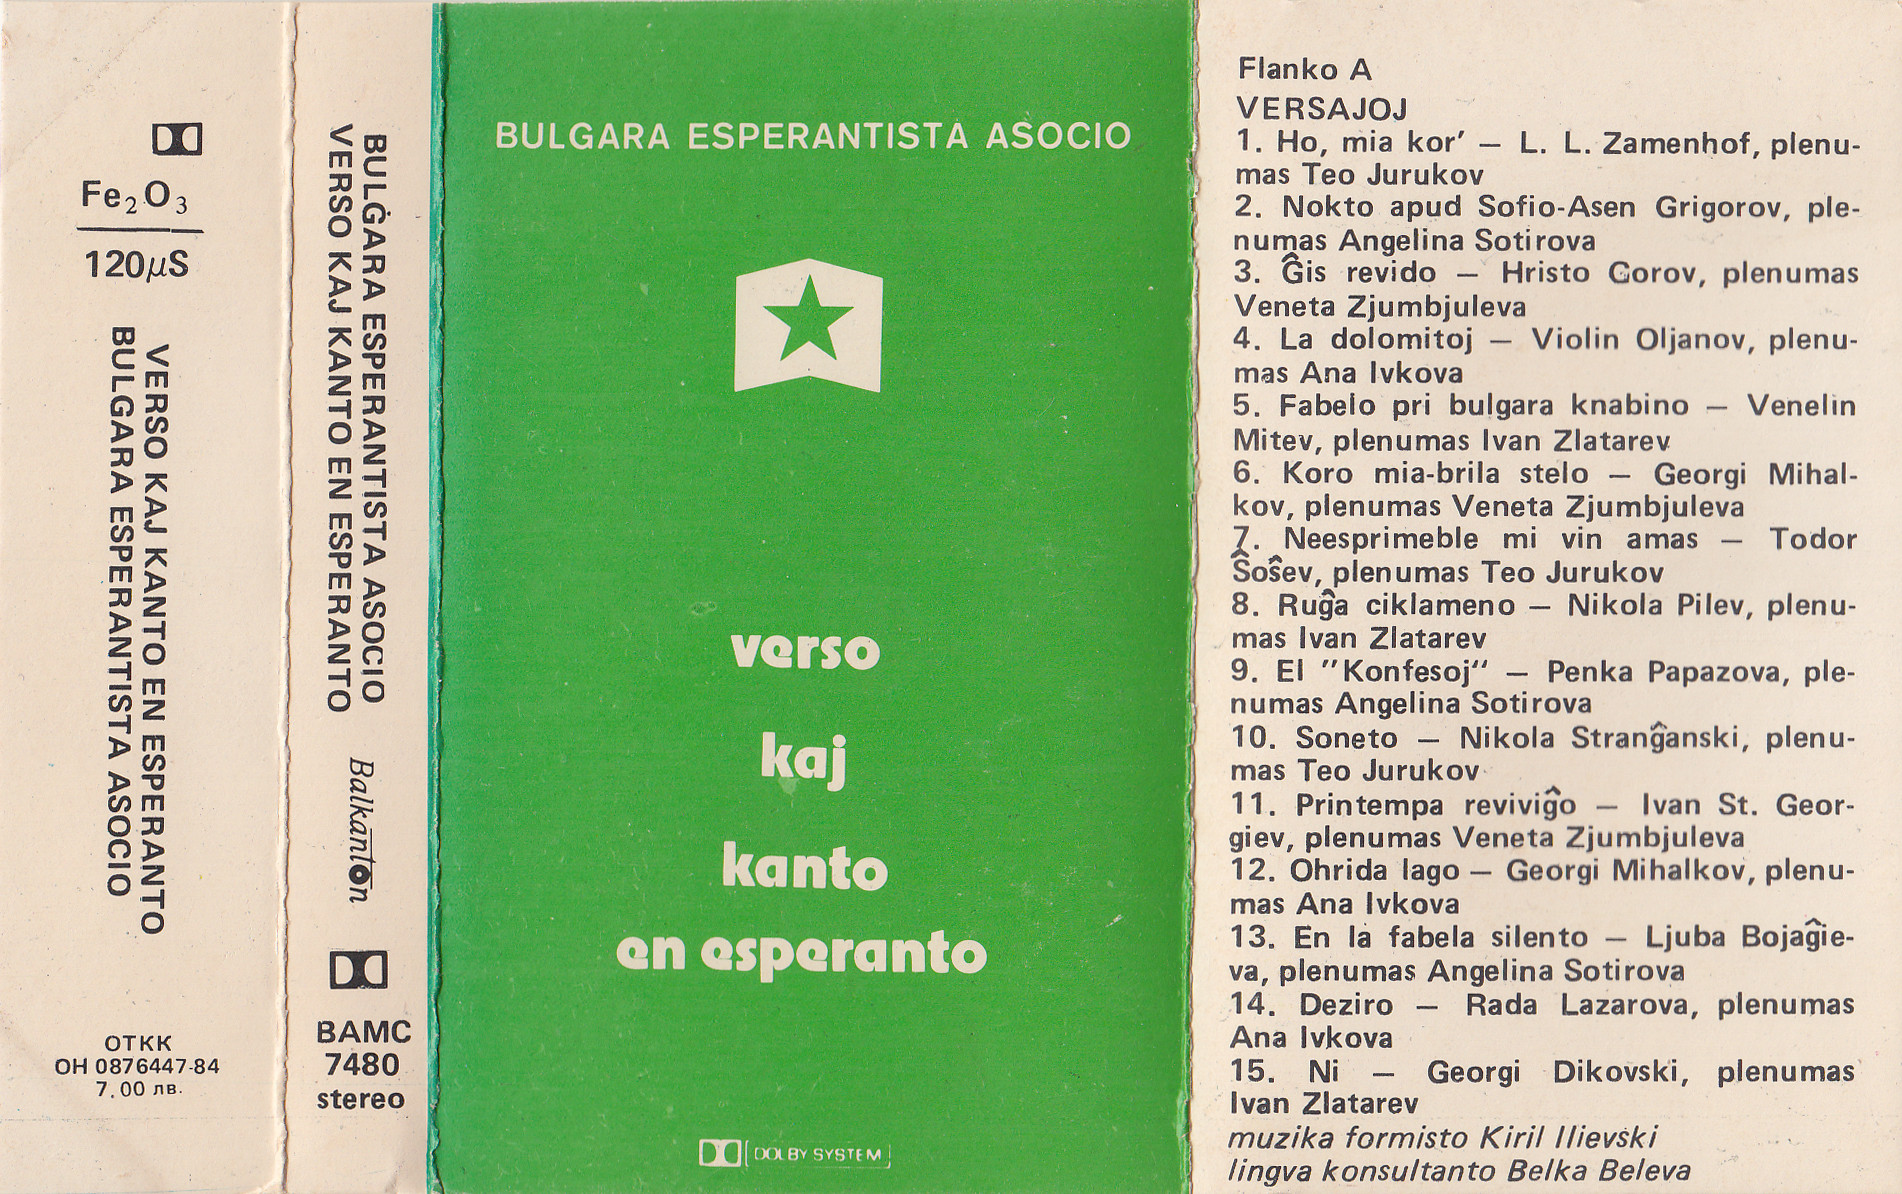 Bulgara Esperantista Asocio. Verso kaj kanto en esperanto